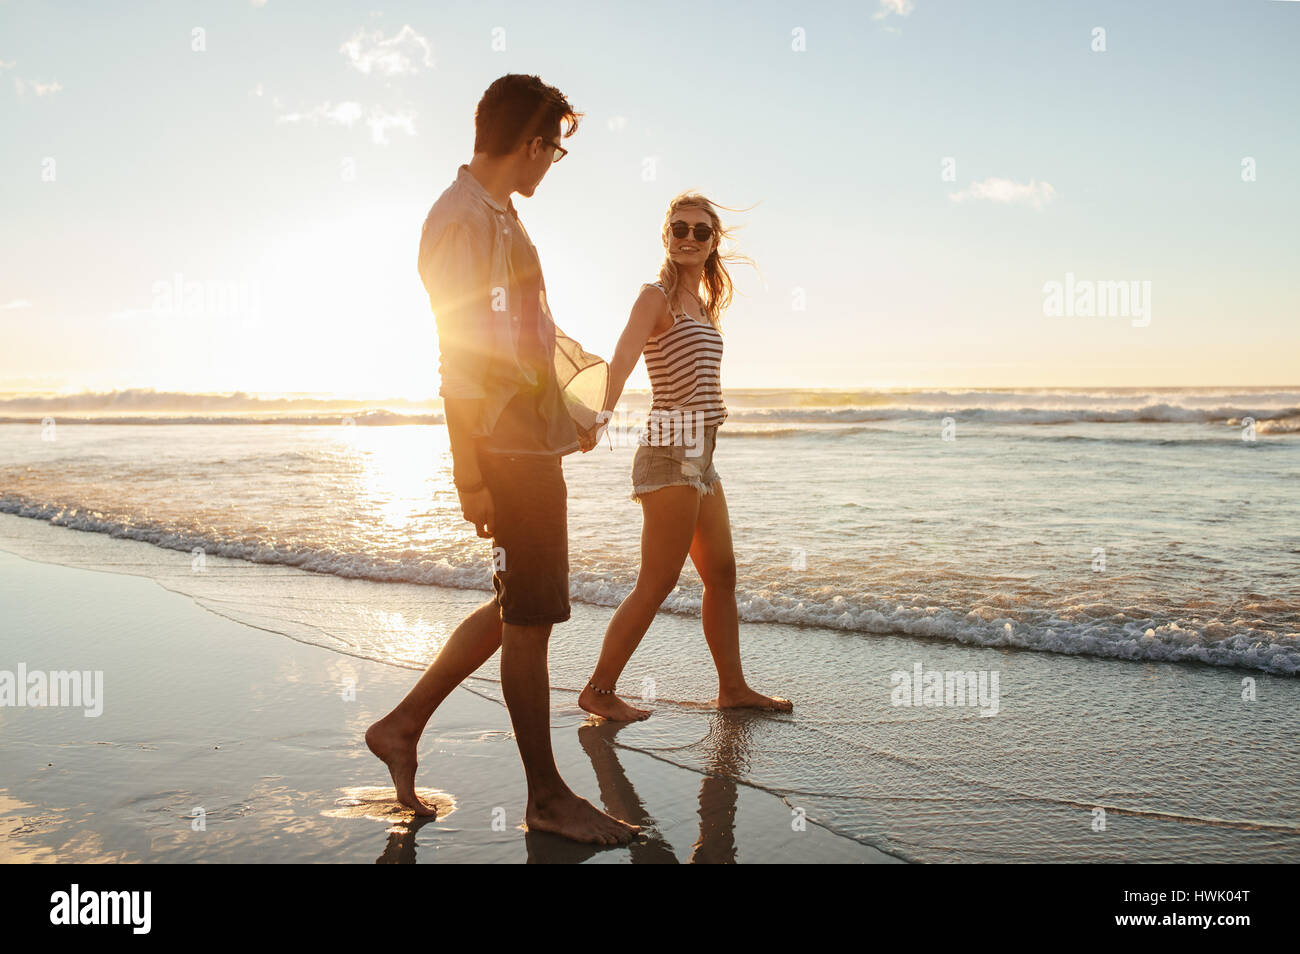 Im Freien Schuss romantischen jungen Paares zu Fuß entlang der Küste. Junger Mann und Frau zusammen spazieren am Strand bei Sonnenuntergang. Stockfoto